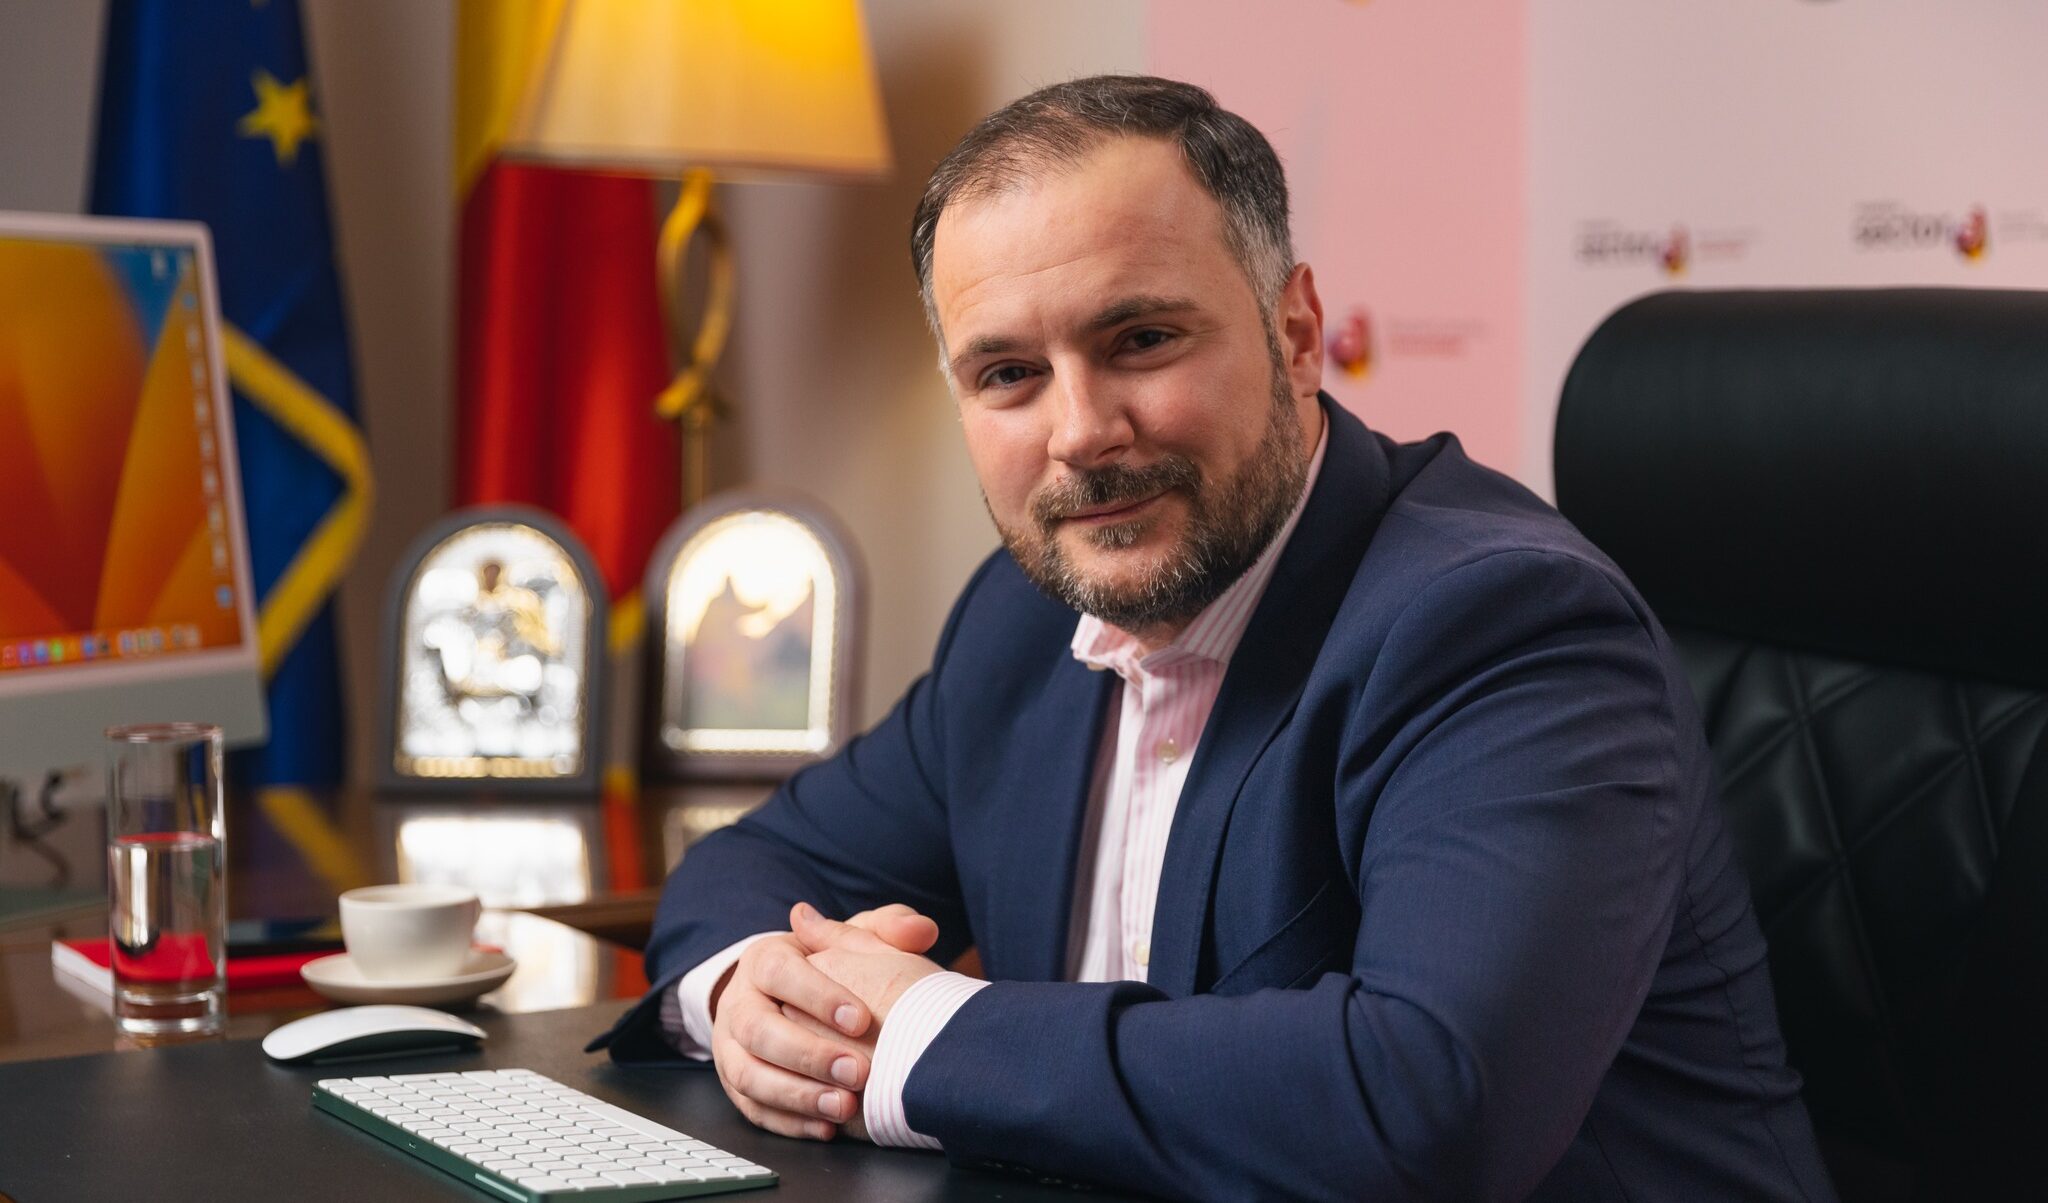 VIDEO | Noul prefect al Capitalei depune jurământul, vineri. Rareș Hopincă a fost consilier general PSD și administrator public al sectorului 5